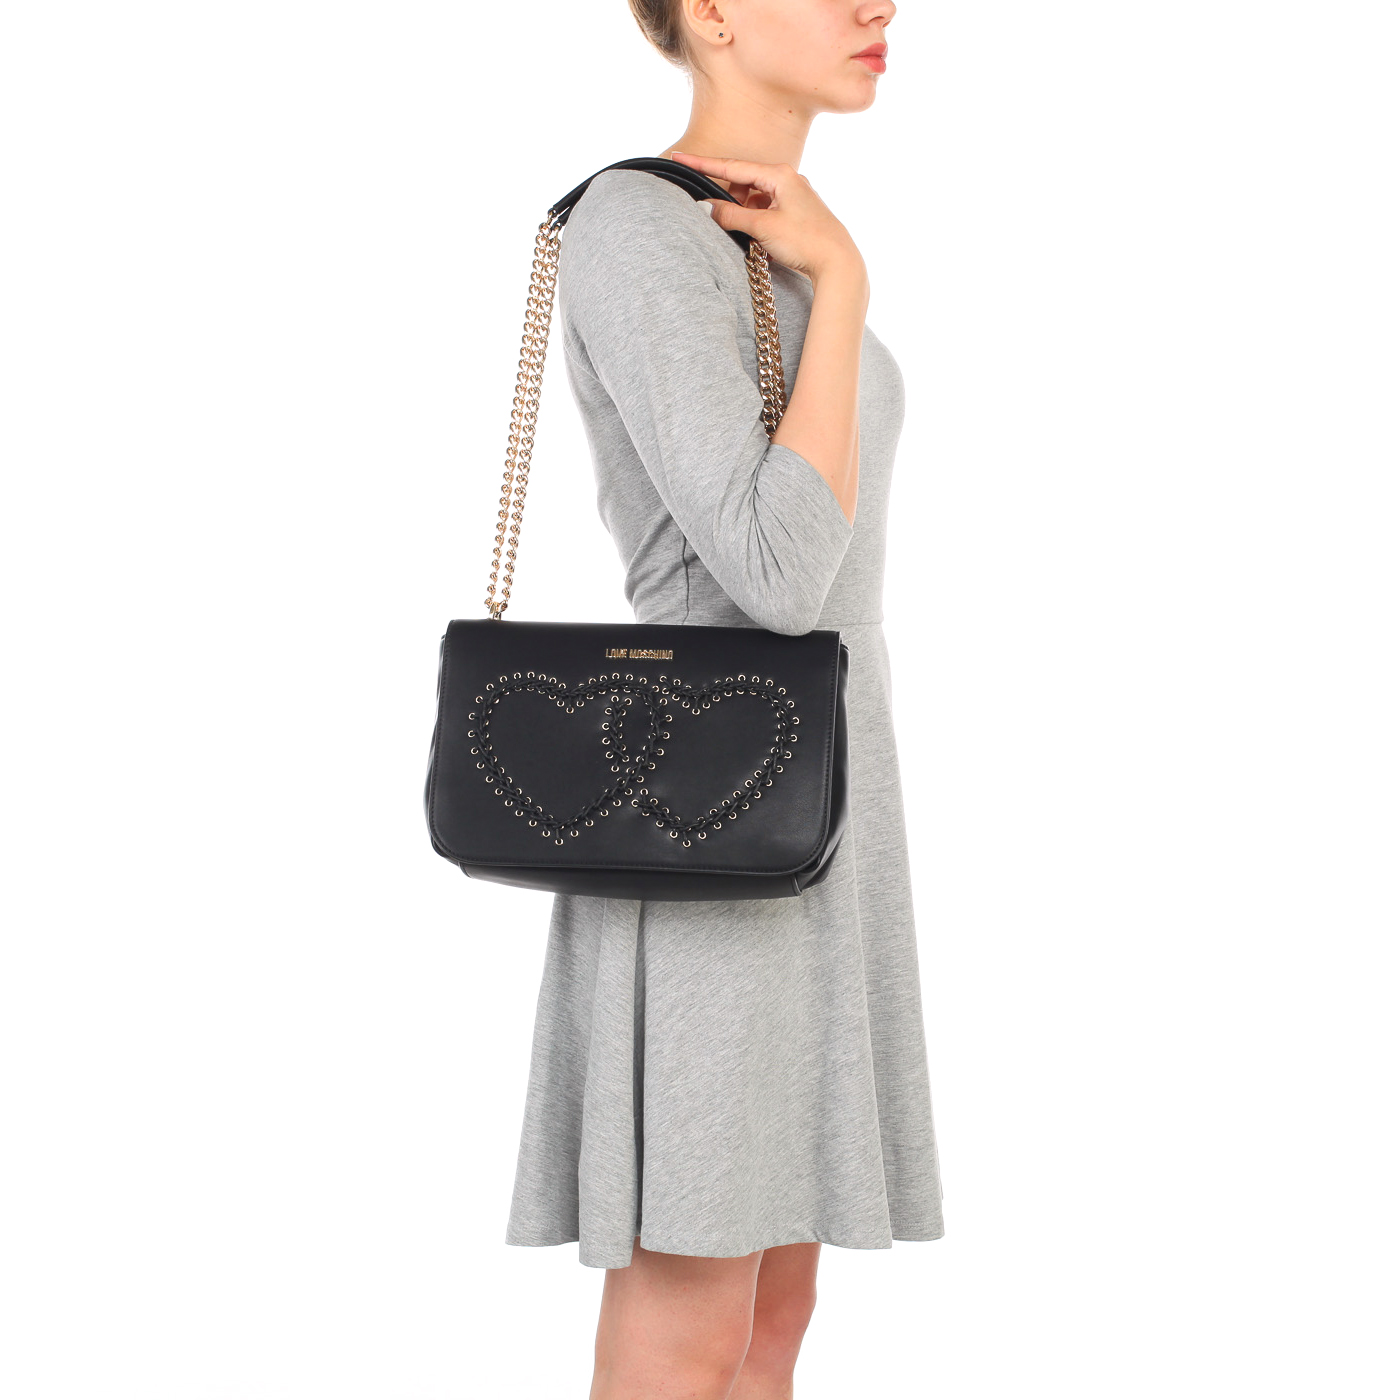 Черная женская сумка с откидным клапаном Love Moschino Stitching bag